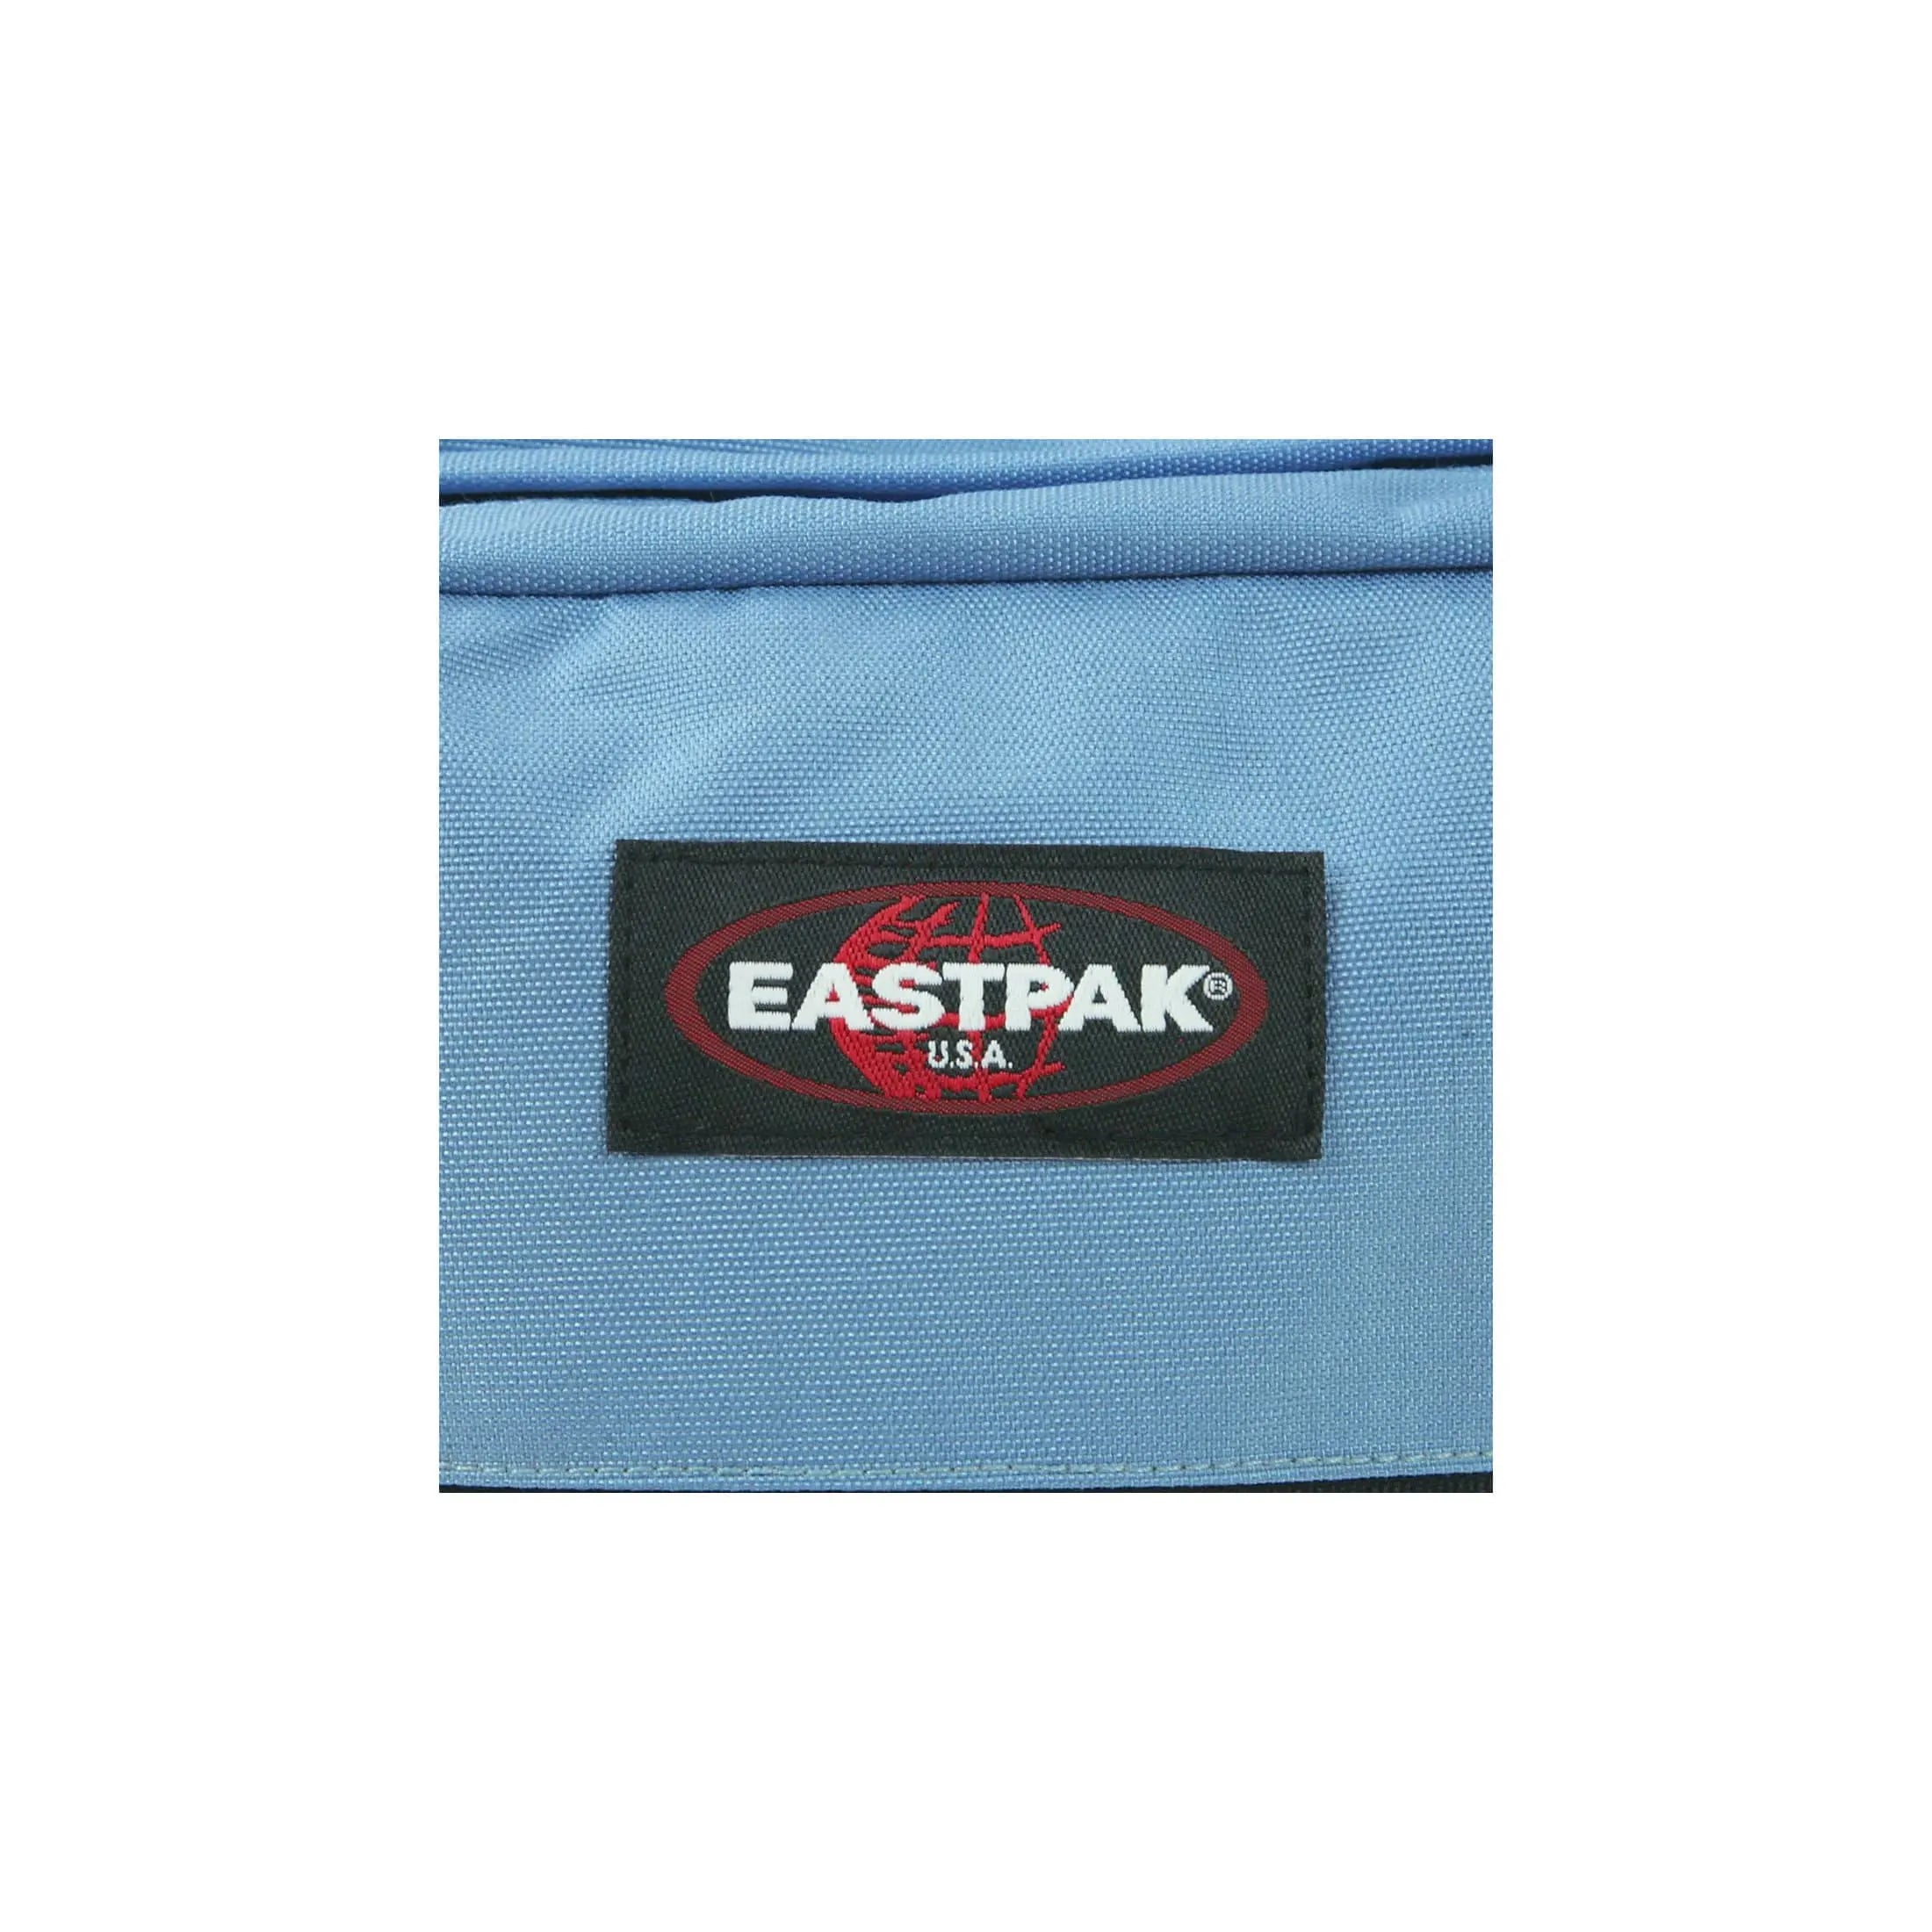 Eastpak Authentic Pinnacle sac à dos de loisirs 42 cm - noir